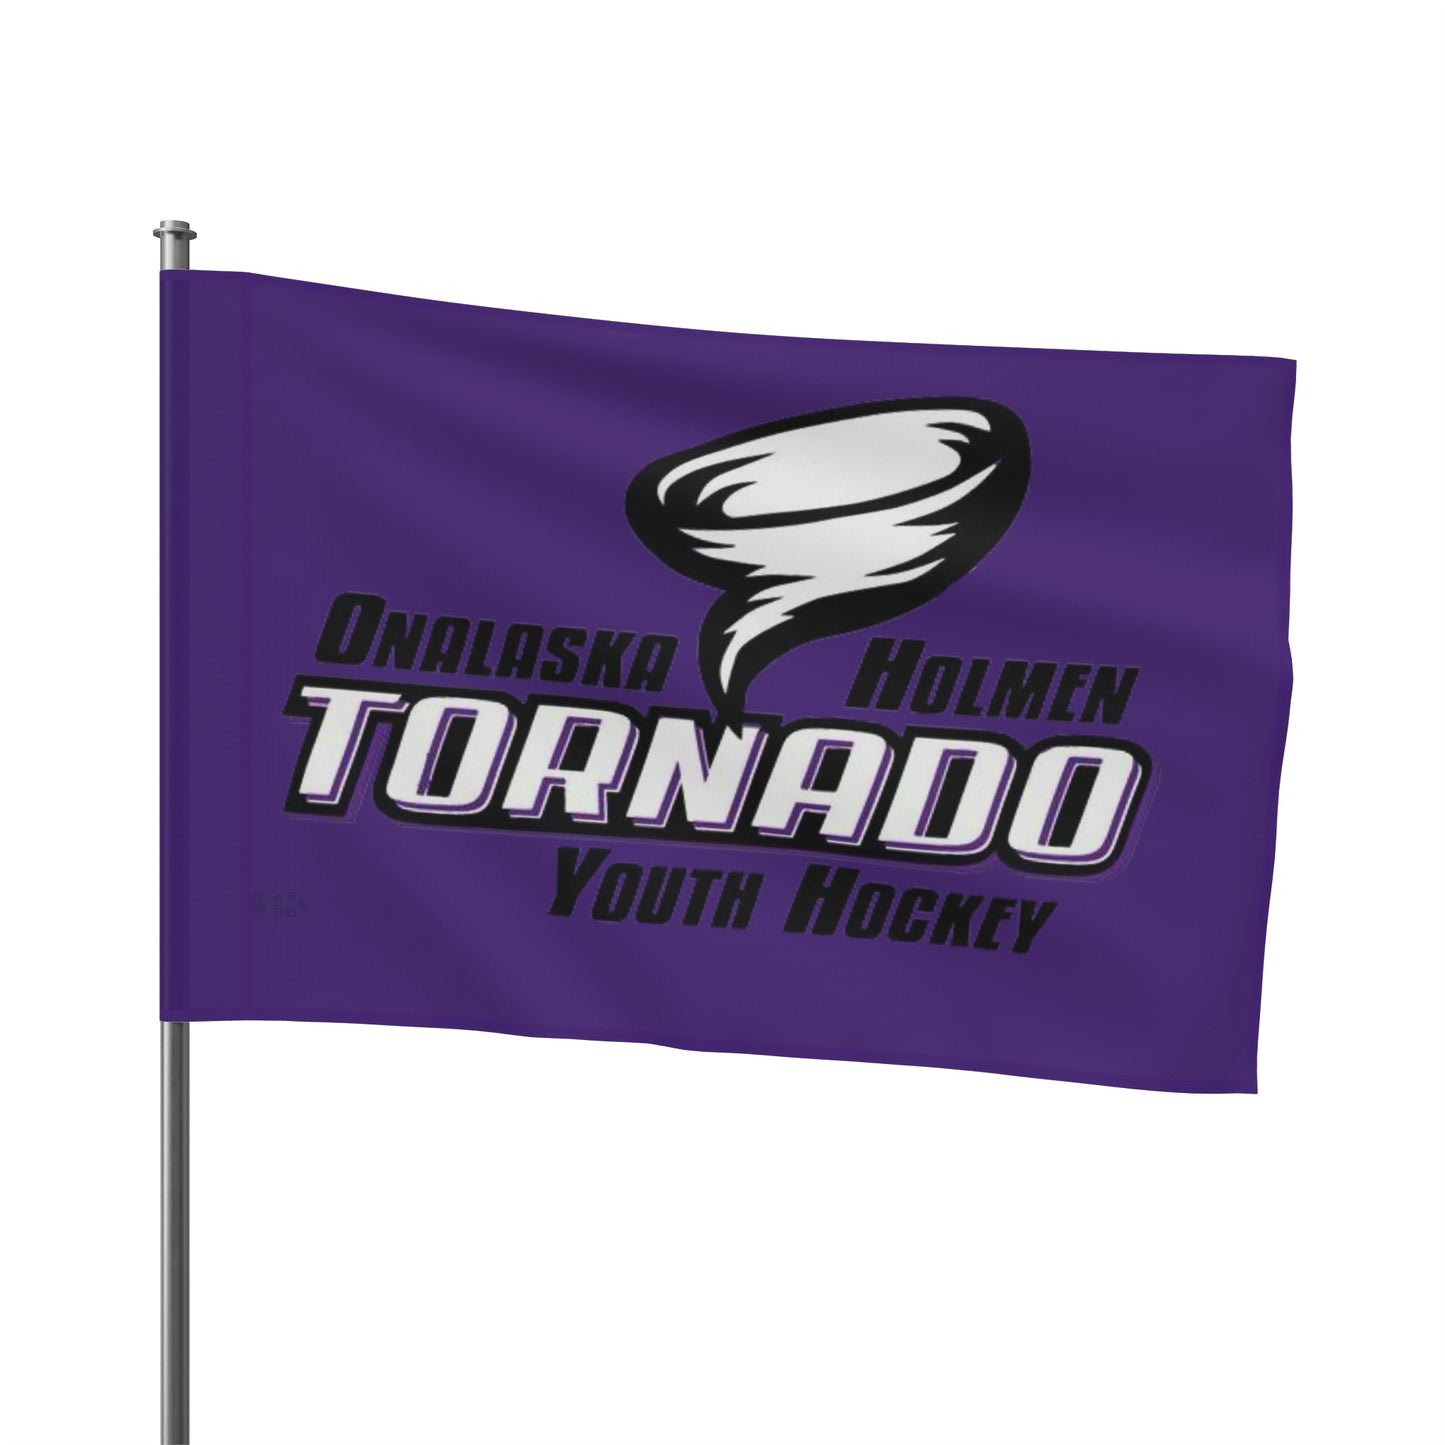 TORNADO YOUTH HOCKEY Flag